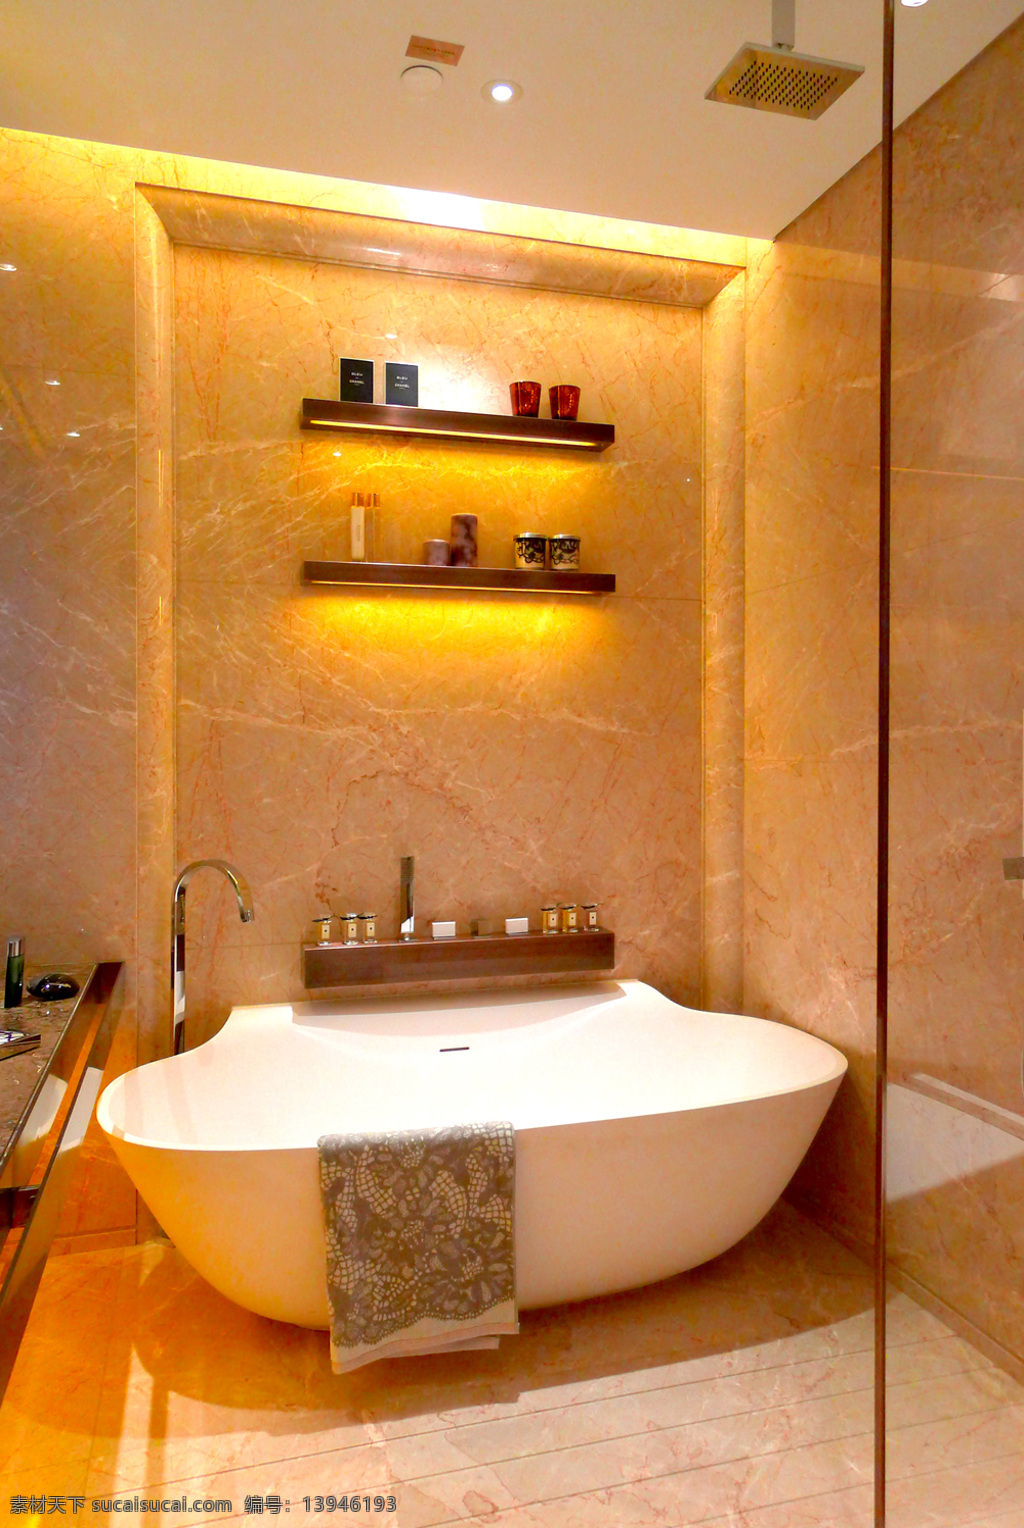 简约 风 室内设计 浴室 浴缸 效果图 现代 家装 家居 家具